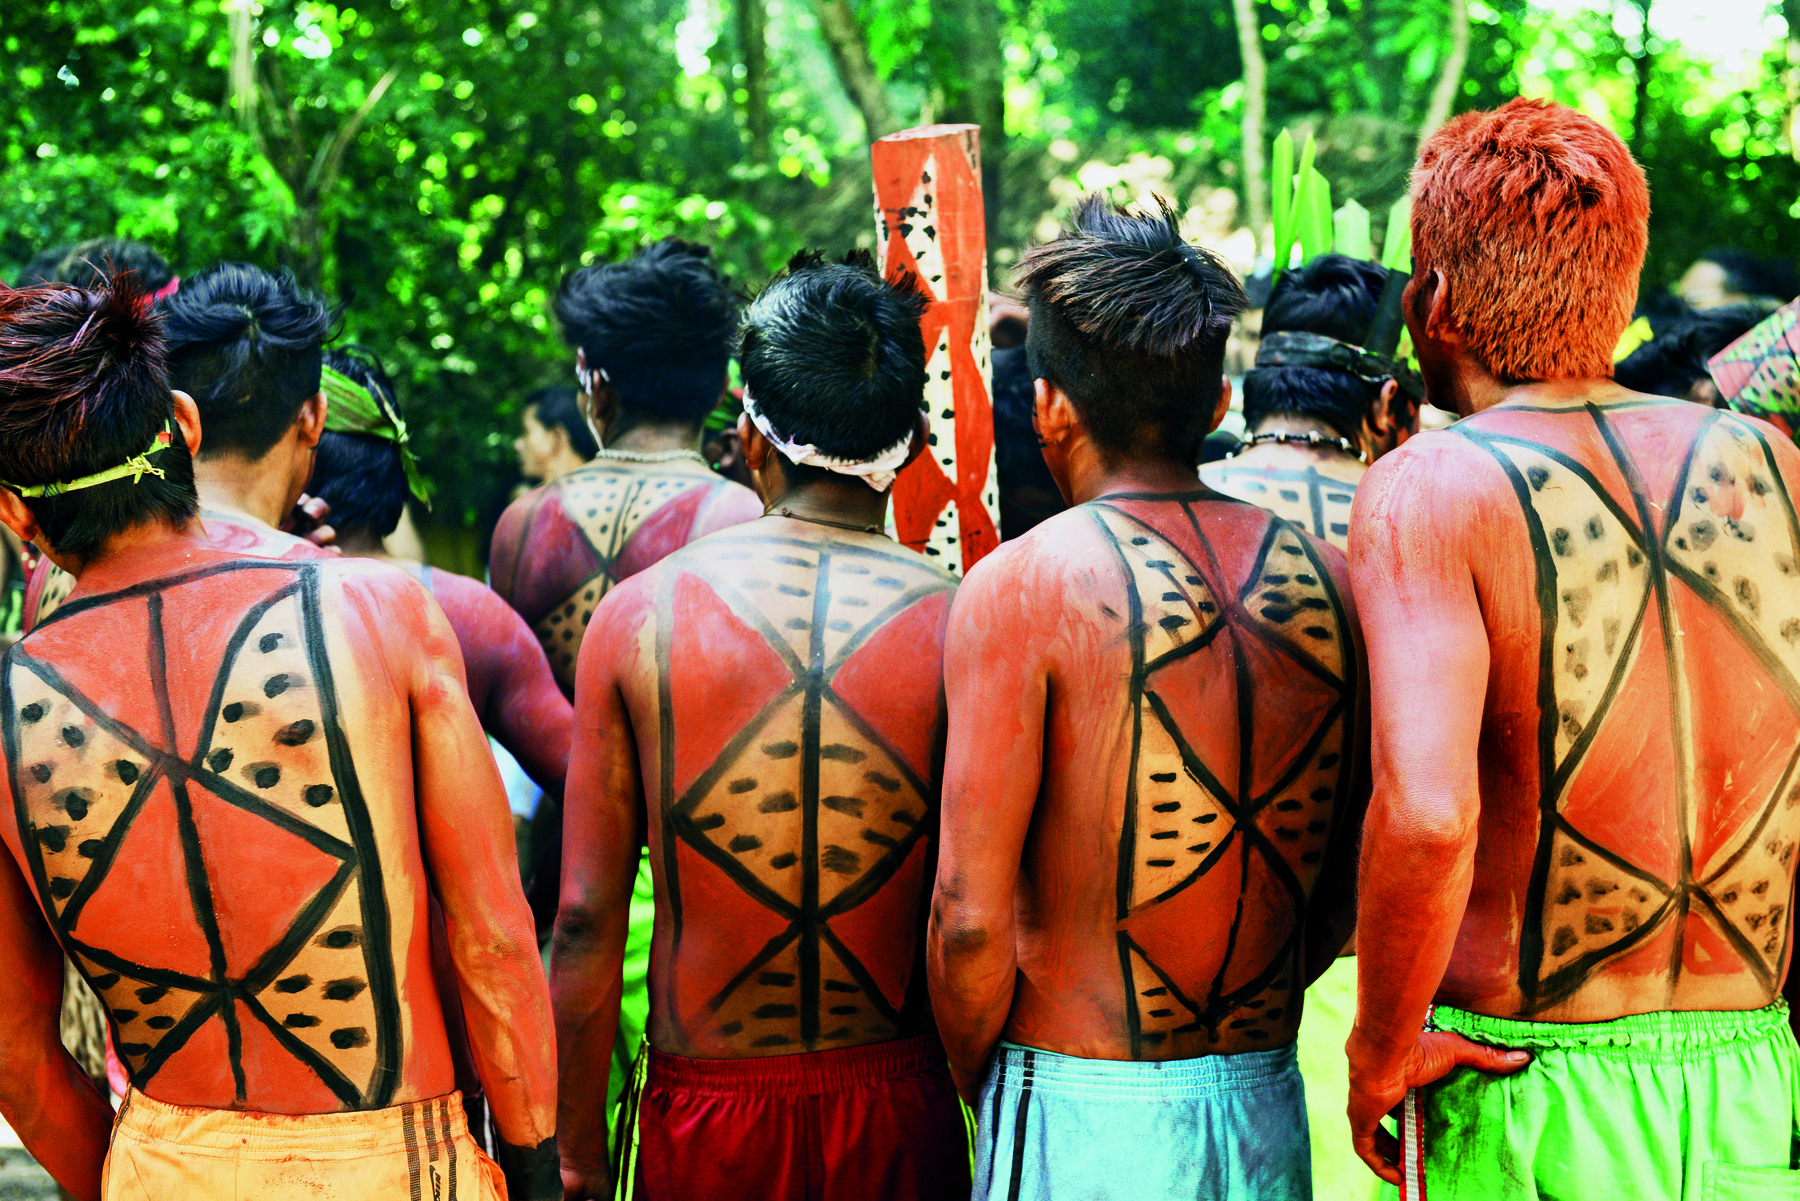 Fotografia. Grupo de indígenas de costas para o observador. Eles estão sem camisa, o que possibilita a visualização de grafismos coloridos presentes em pinturas corporais em suas costas.